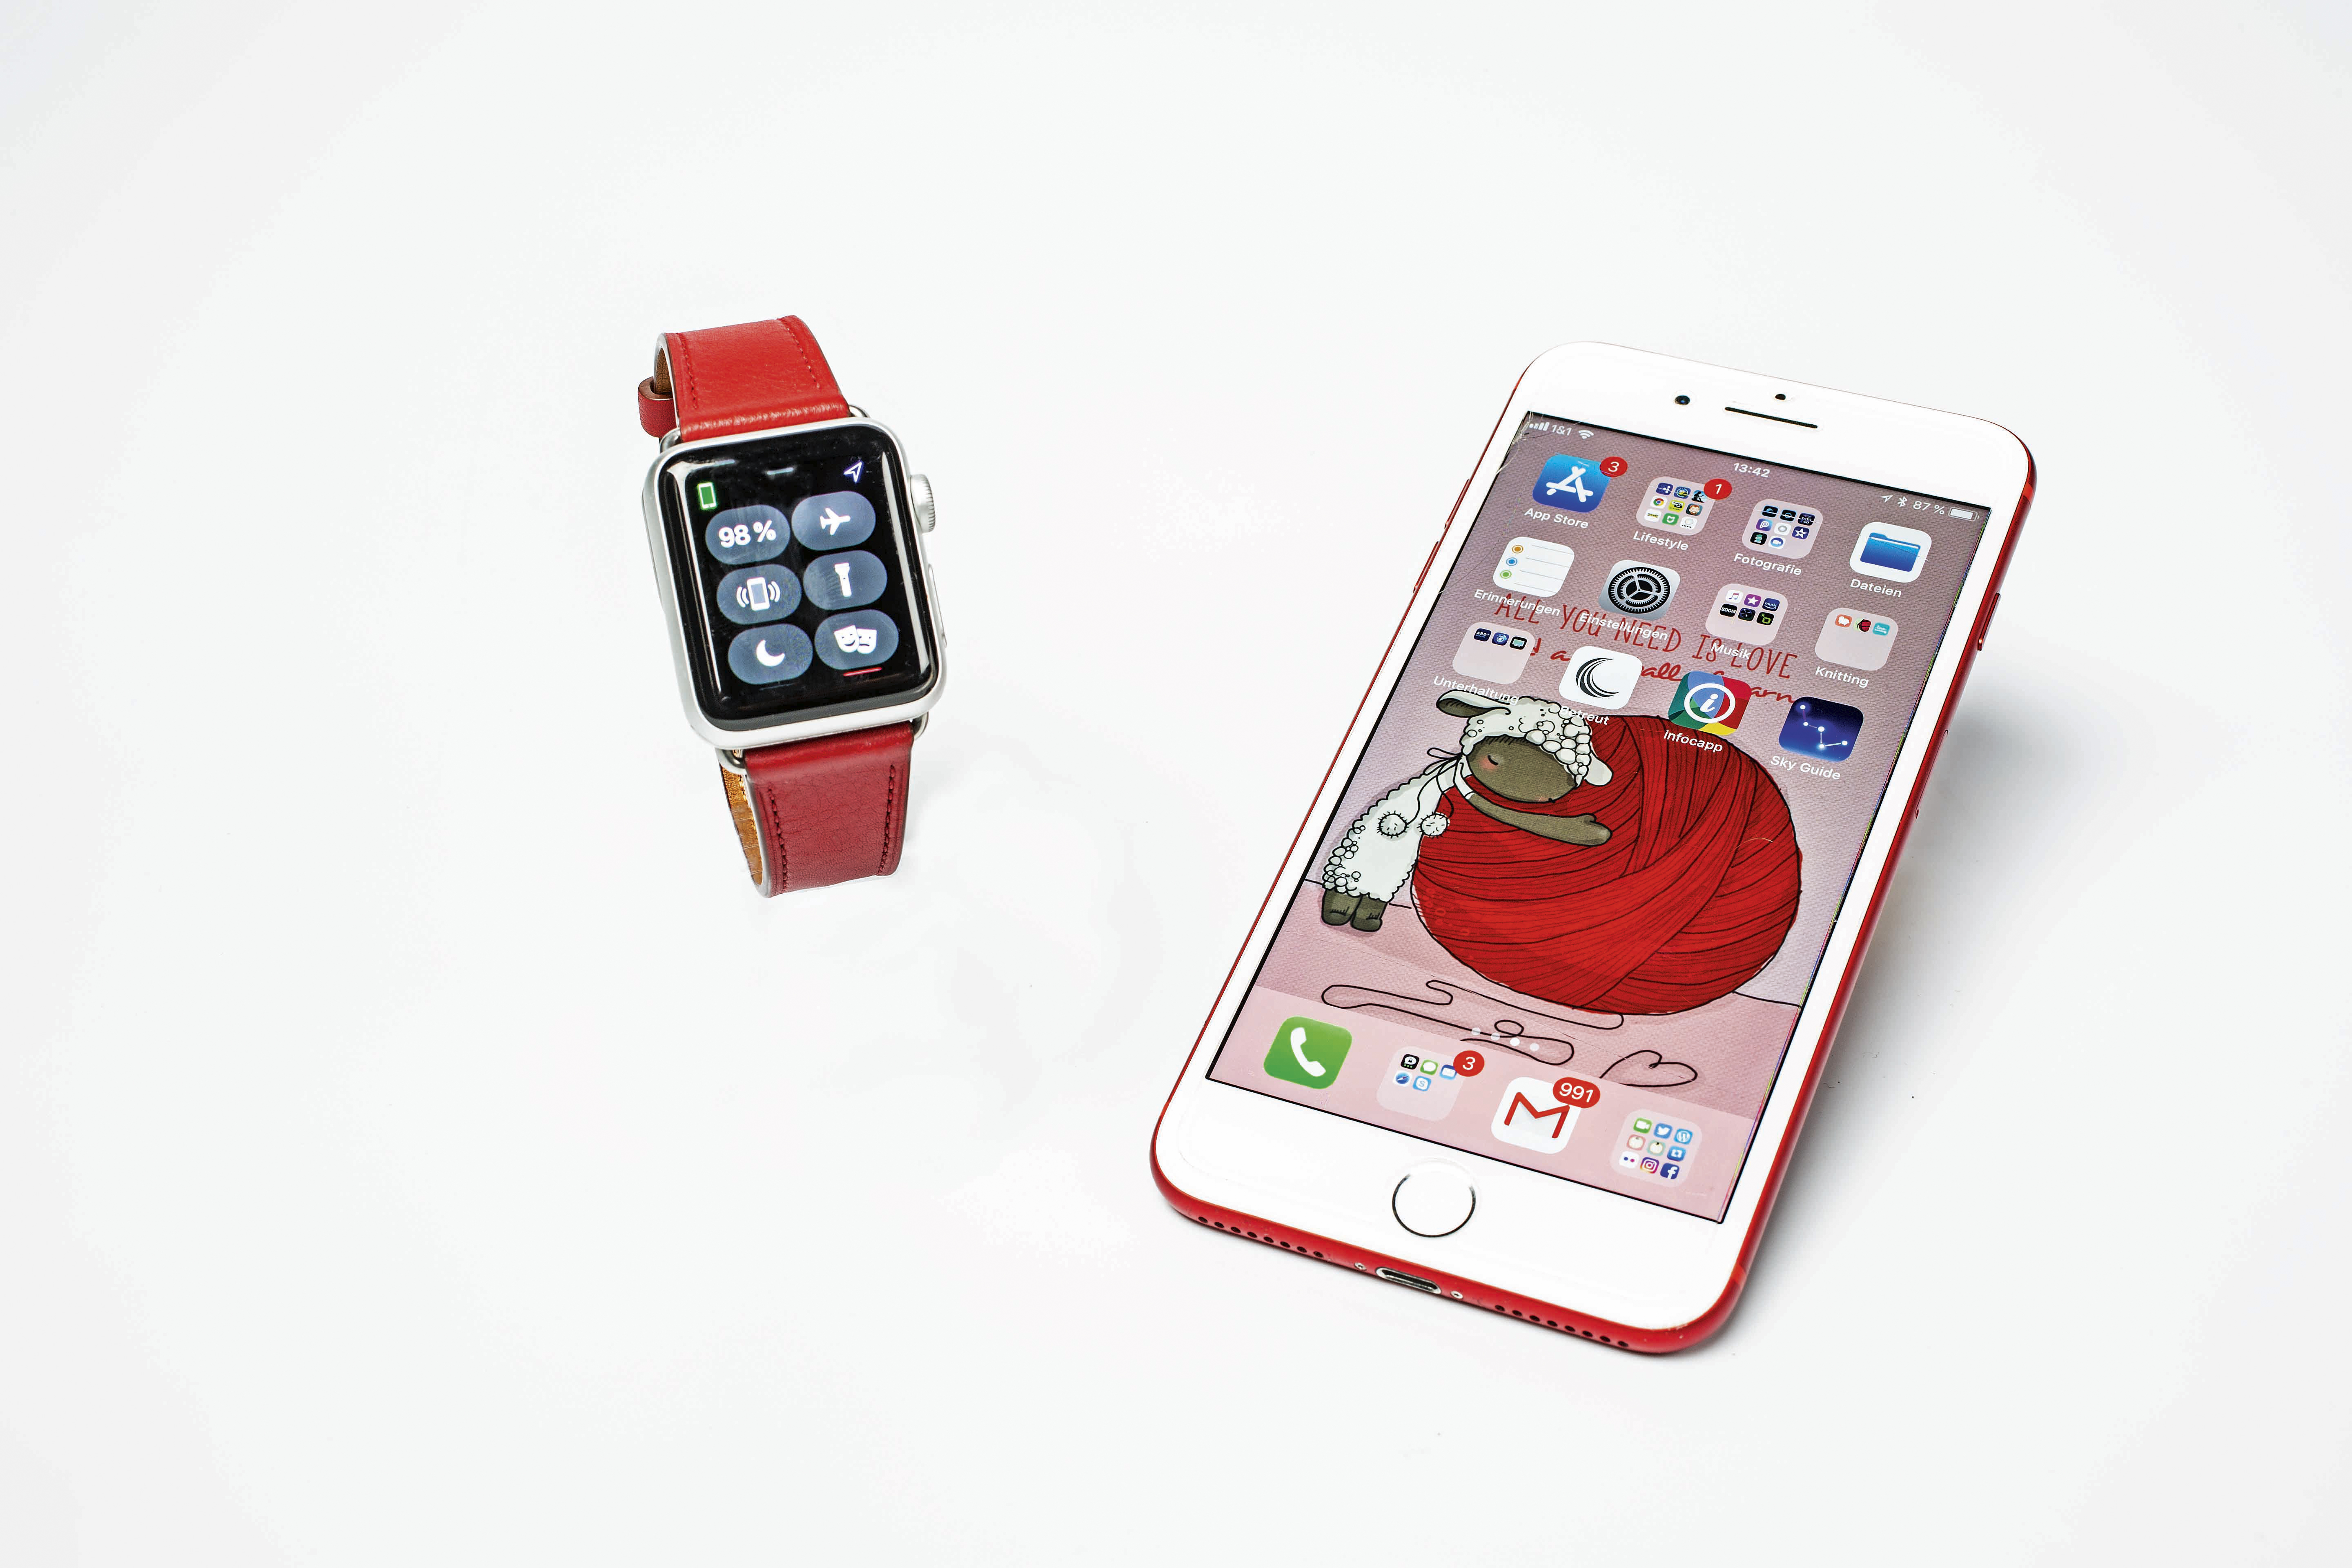 iPhone anpingen mit der Apple Watch - so geht's | heise online